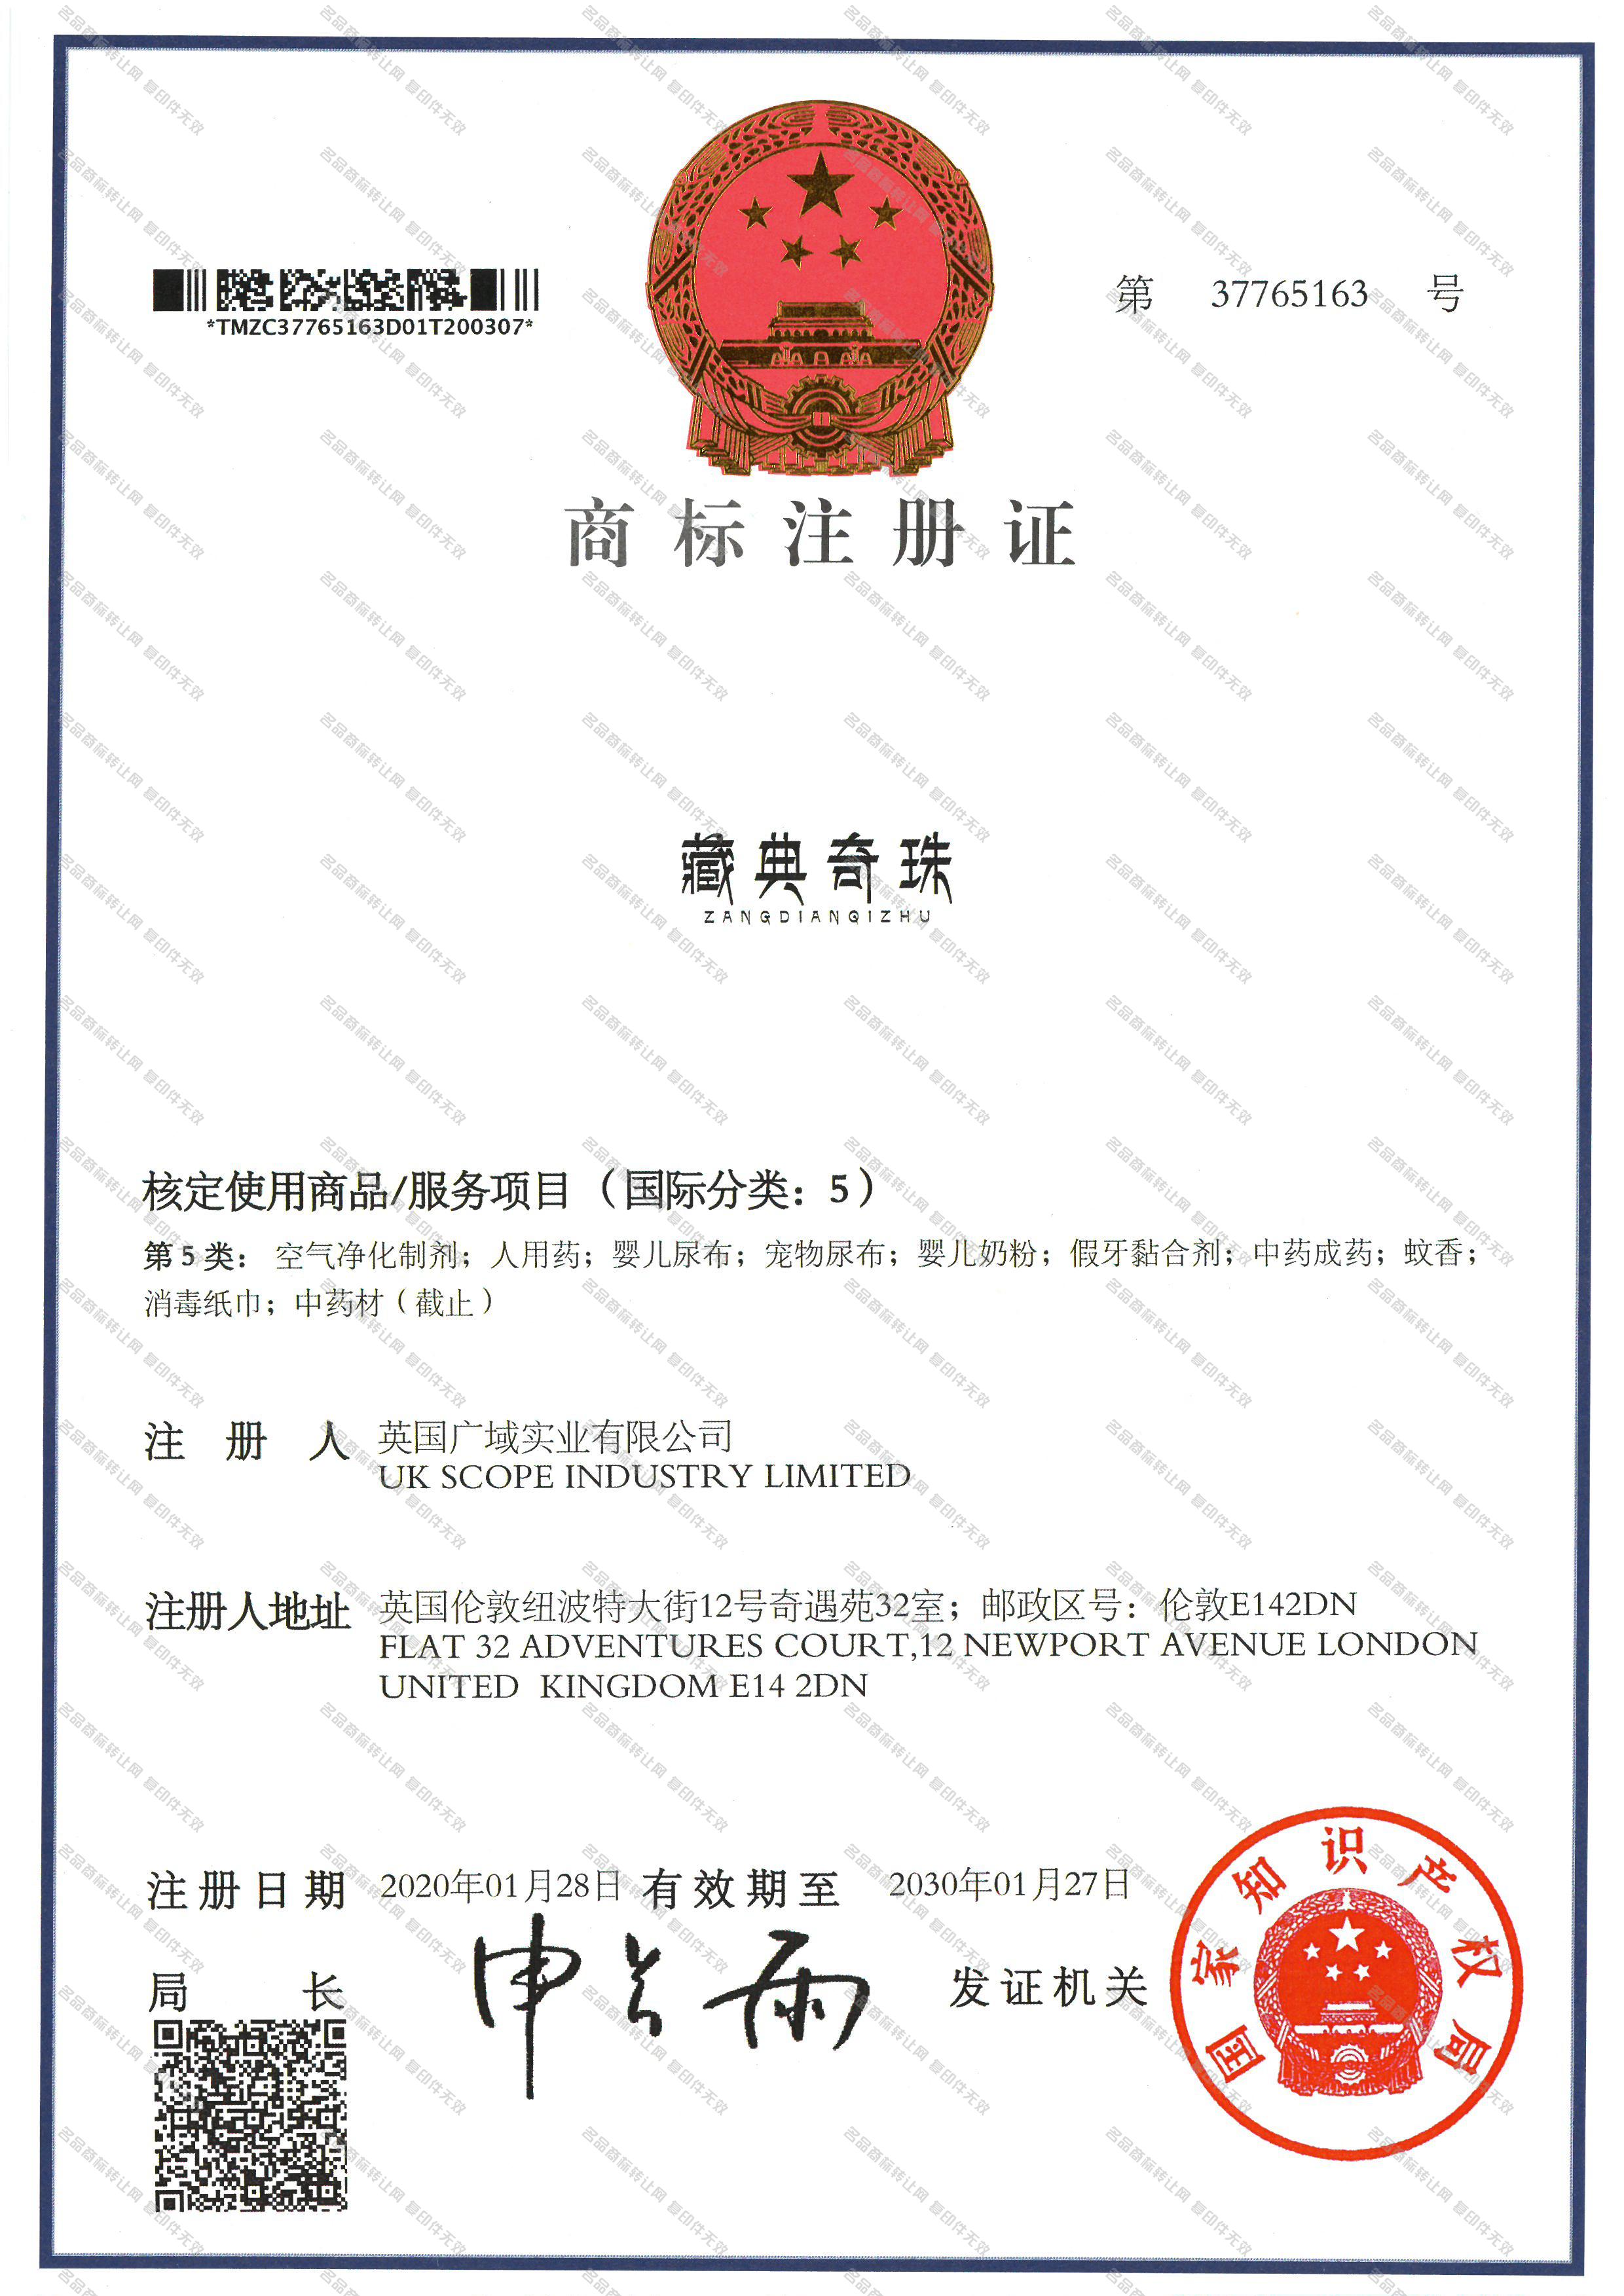 藏典奇珠 ZANGDIANQIZHU注册证